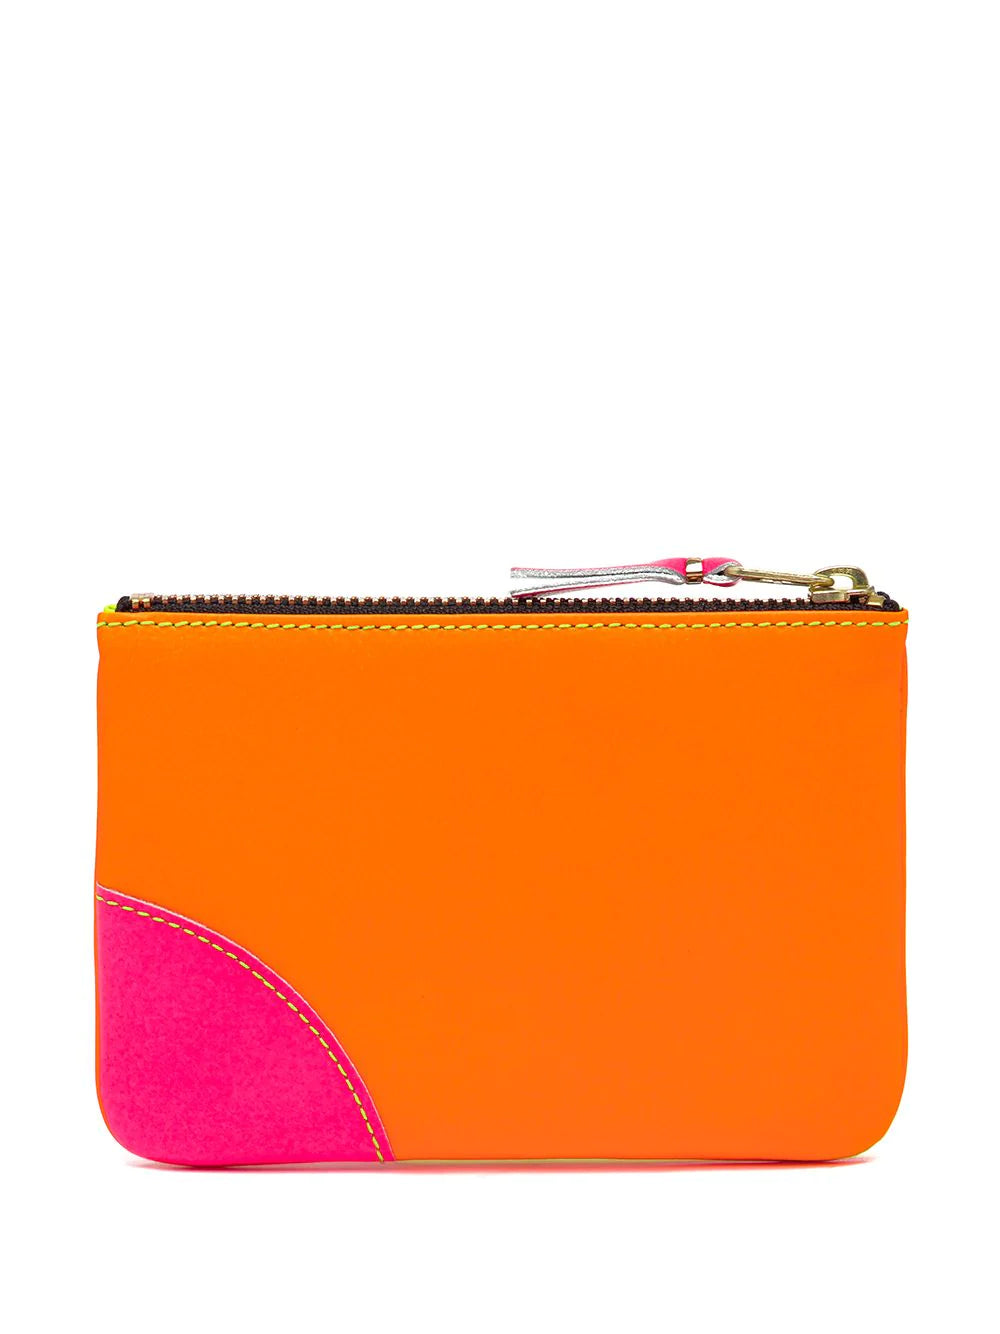 Comme Des Garçons Wallet Zipped Color Block Purse | Shop in Lisbon & Online at SHEET-1.com